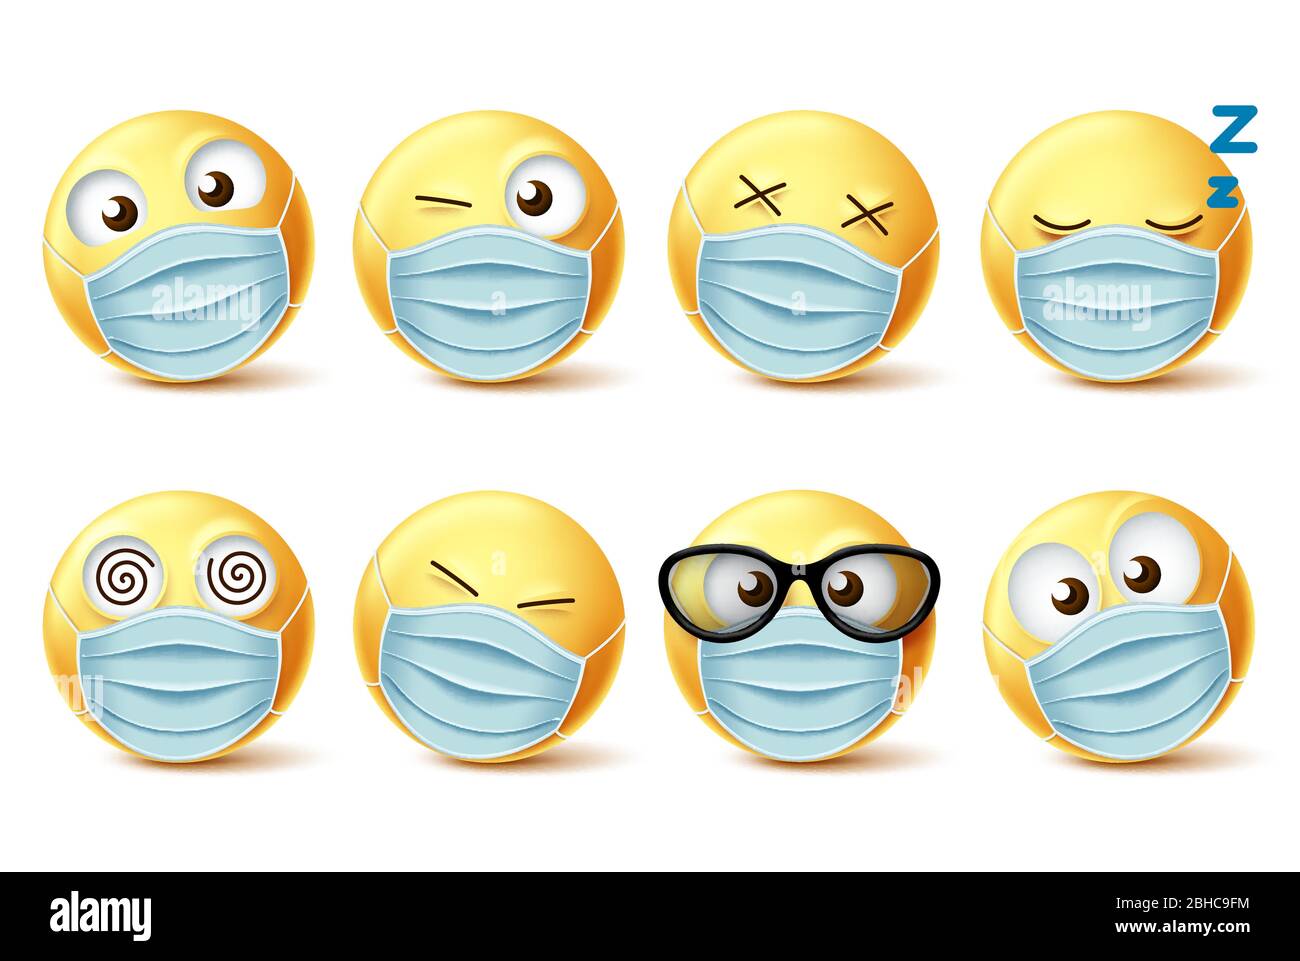 Emojis Gesichtsmaske Vektor Emoticon Set. Emoji-Gesichter mit Covid-19 Gesichtsmaske und Mimik für ncov Corona Virus Design-Elemente. Stock Vektor